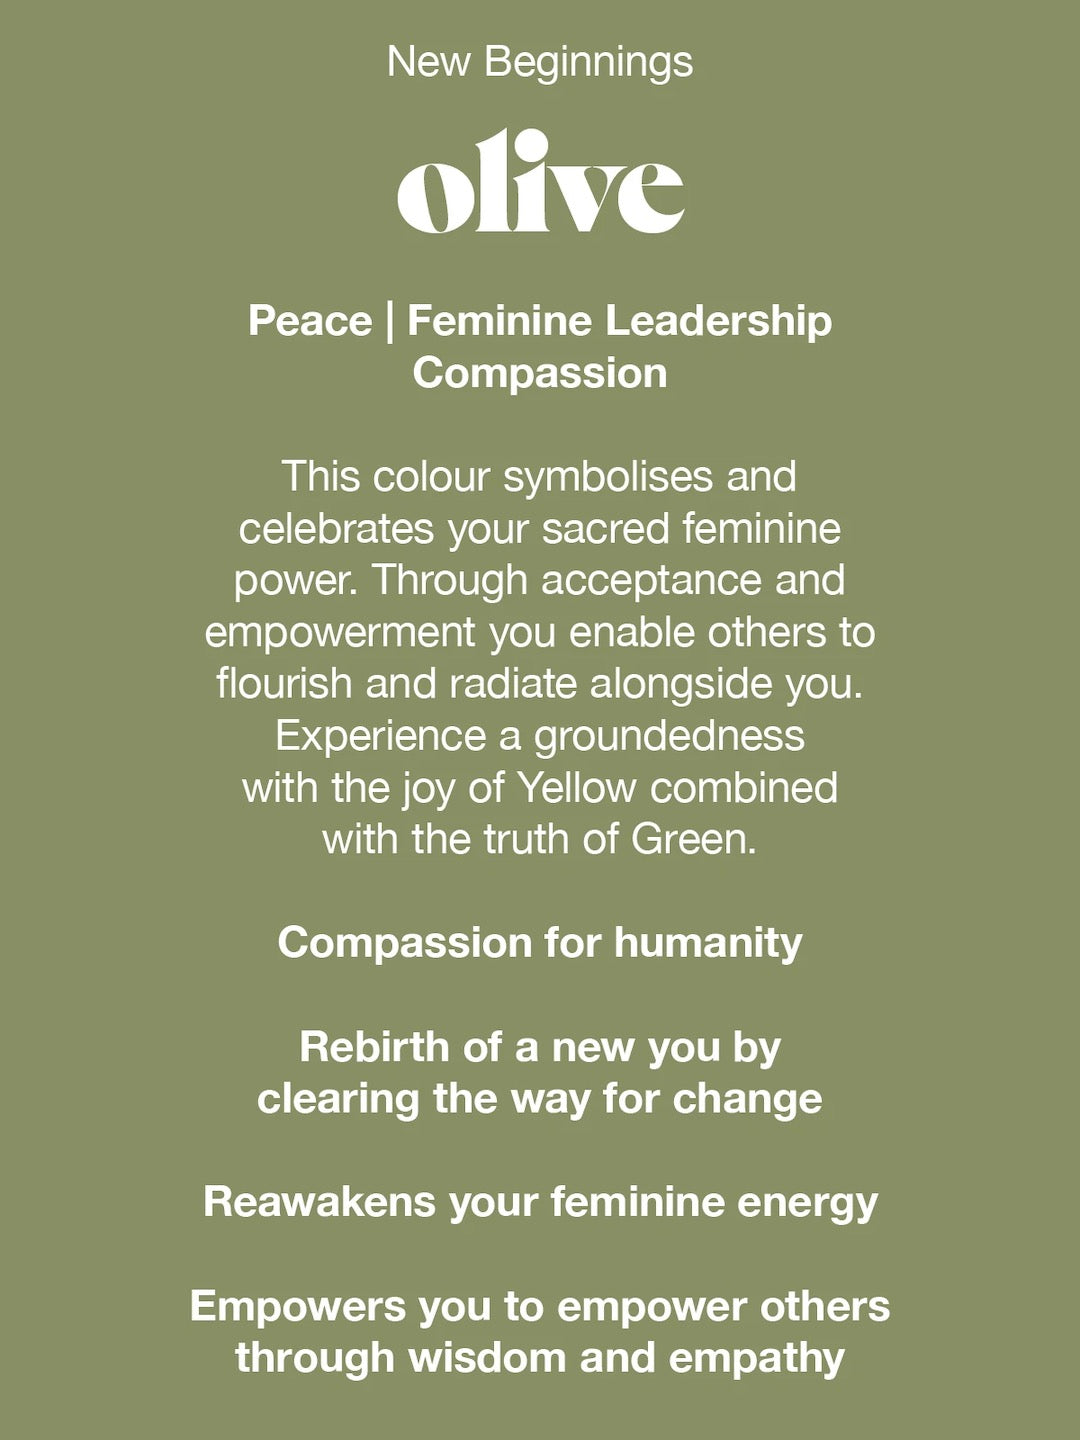 New beginnings Maggie Bra – Olive Videris feminine leadership compassion.